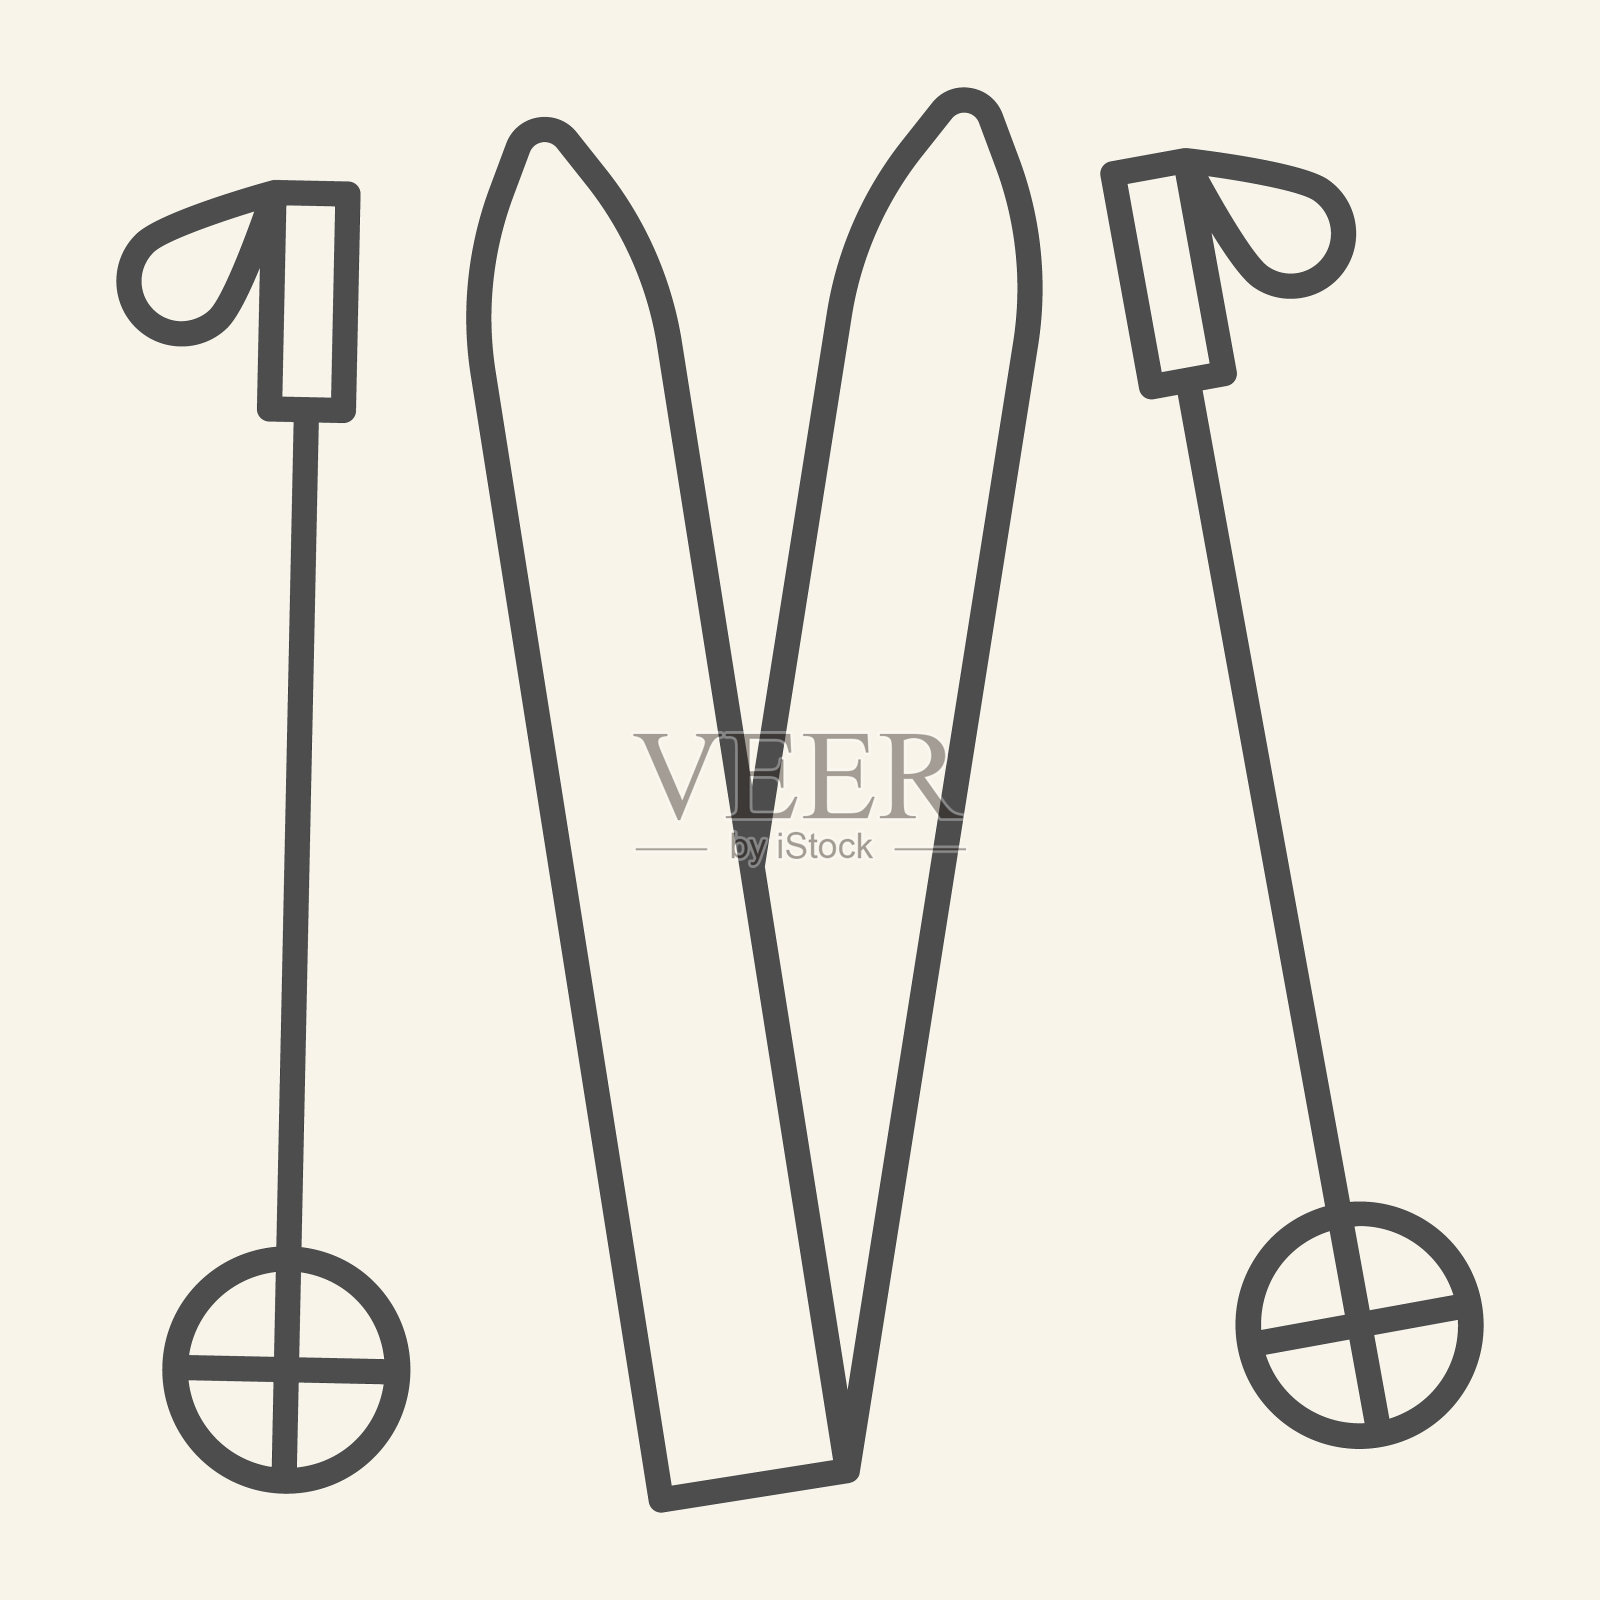 滑雪细线图标。滑雪设备轮廓风格象形图上的米色背景。用于移动概念和网页设计的滑雪齿轮和棍棒。矢量图形。图标素材